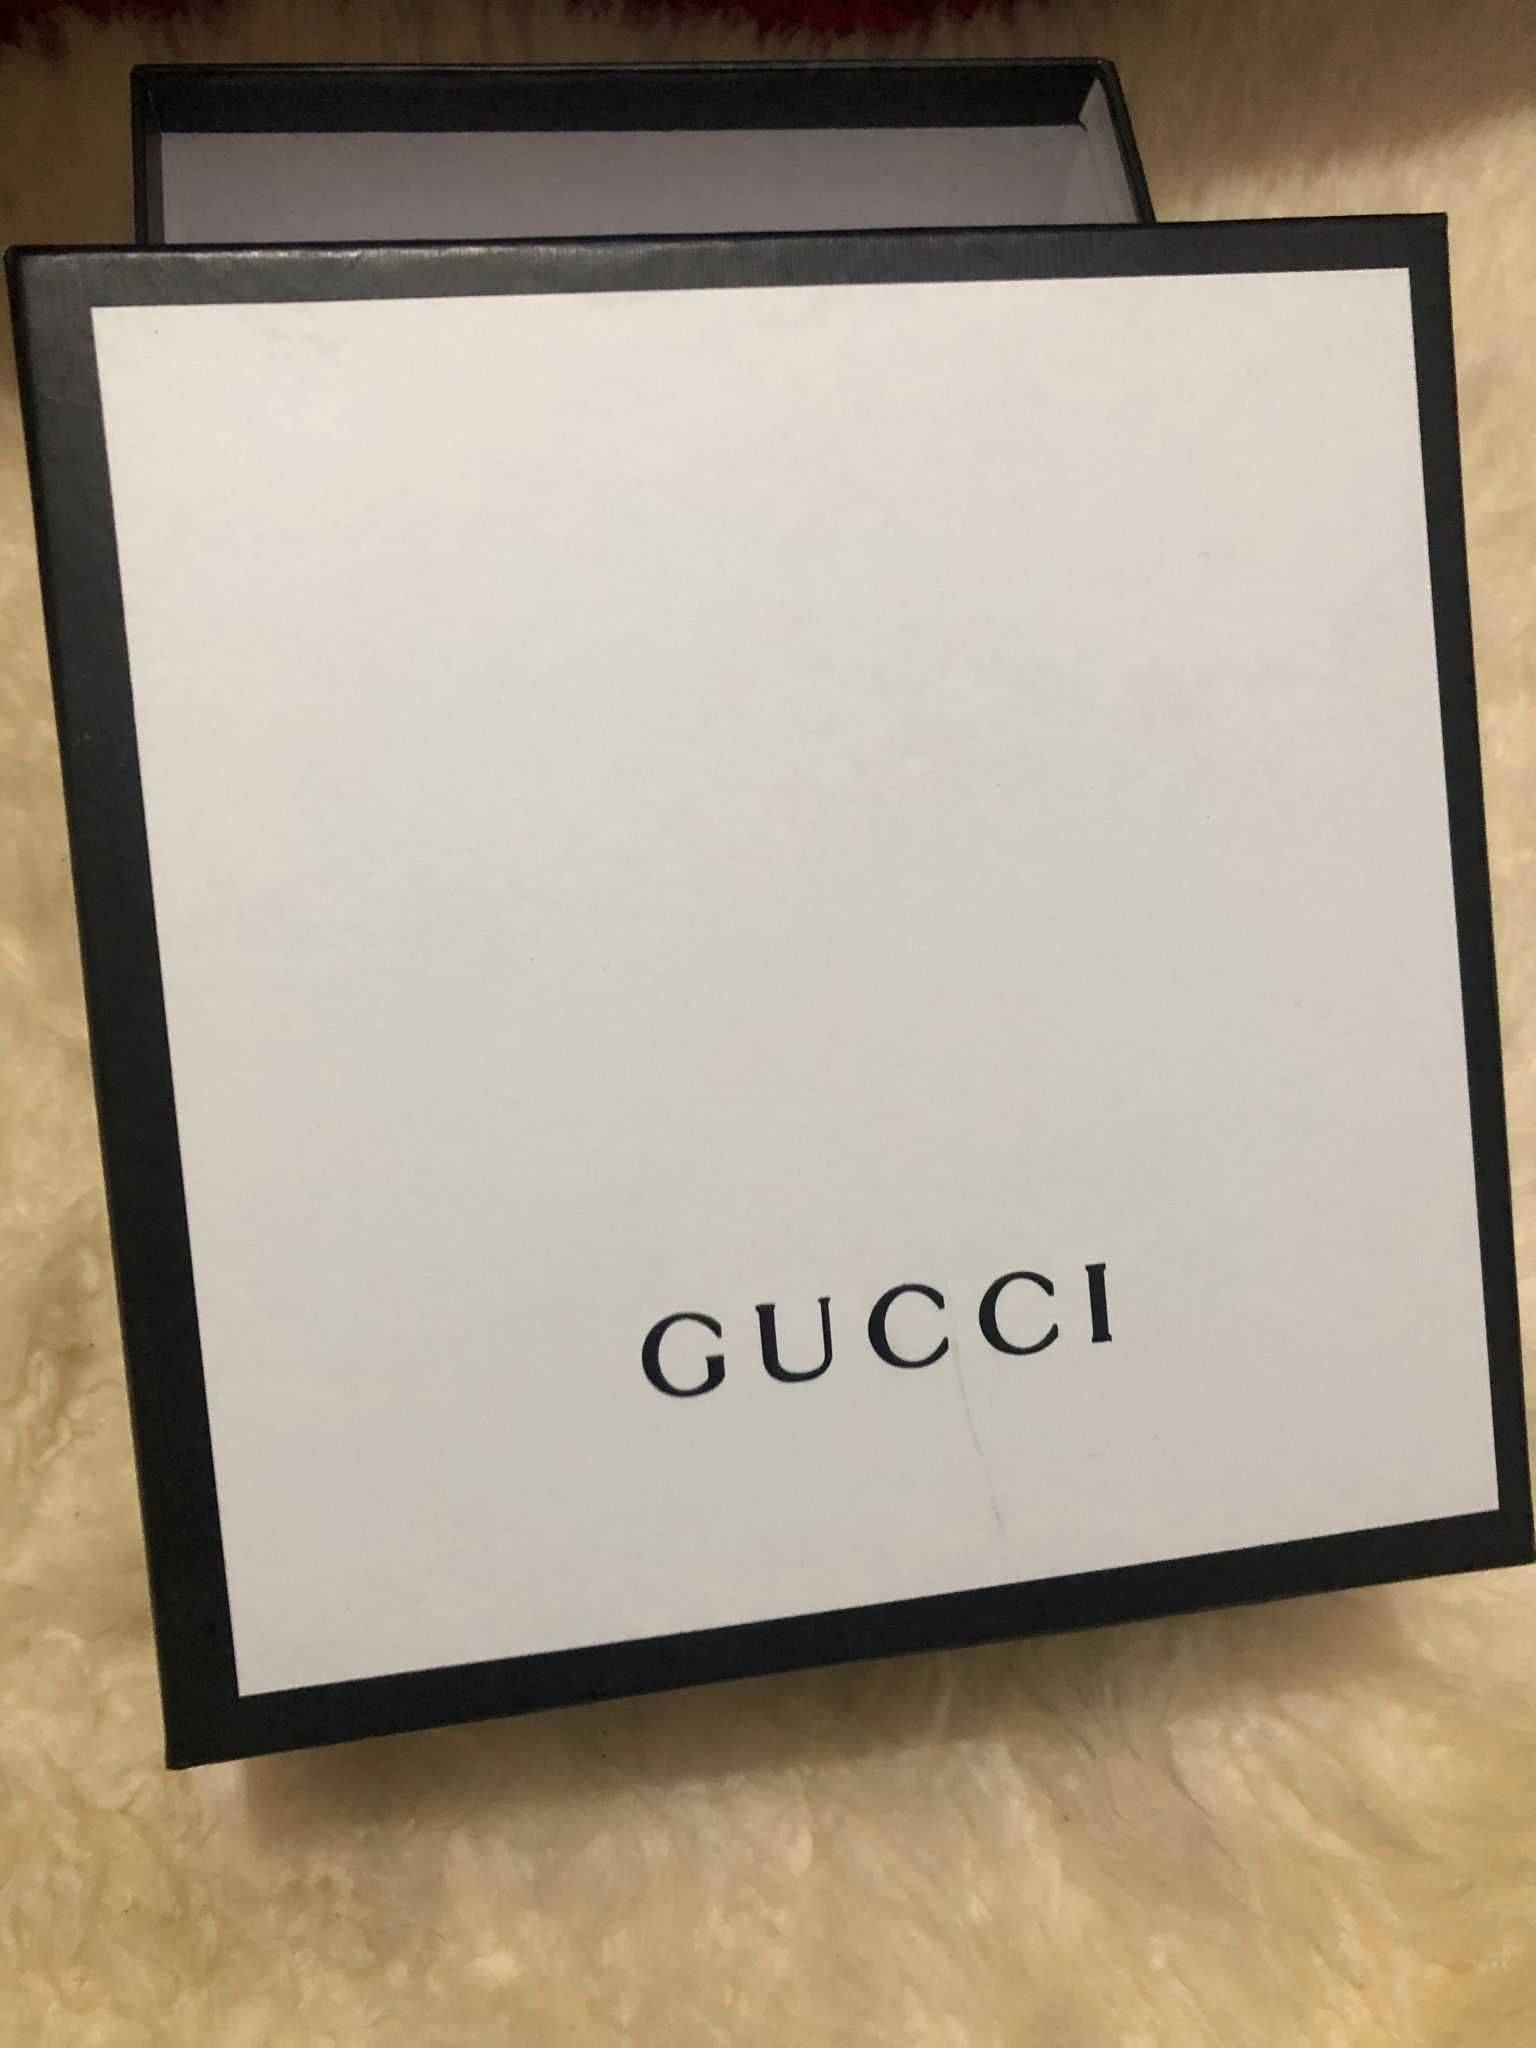 Cutii Gucci cutie noi ambalaj box